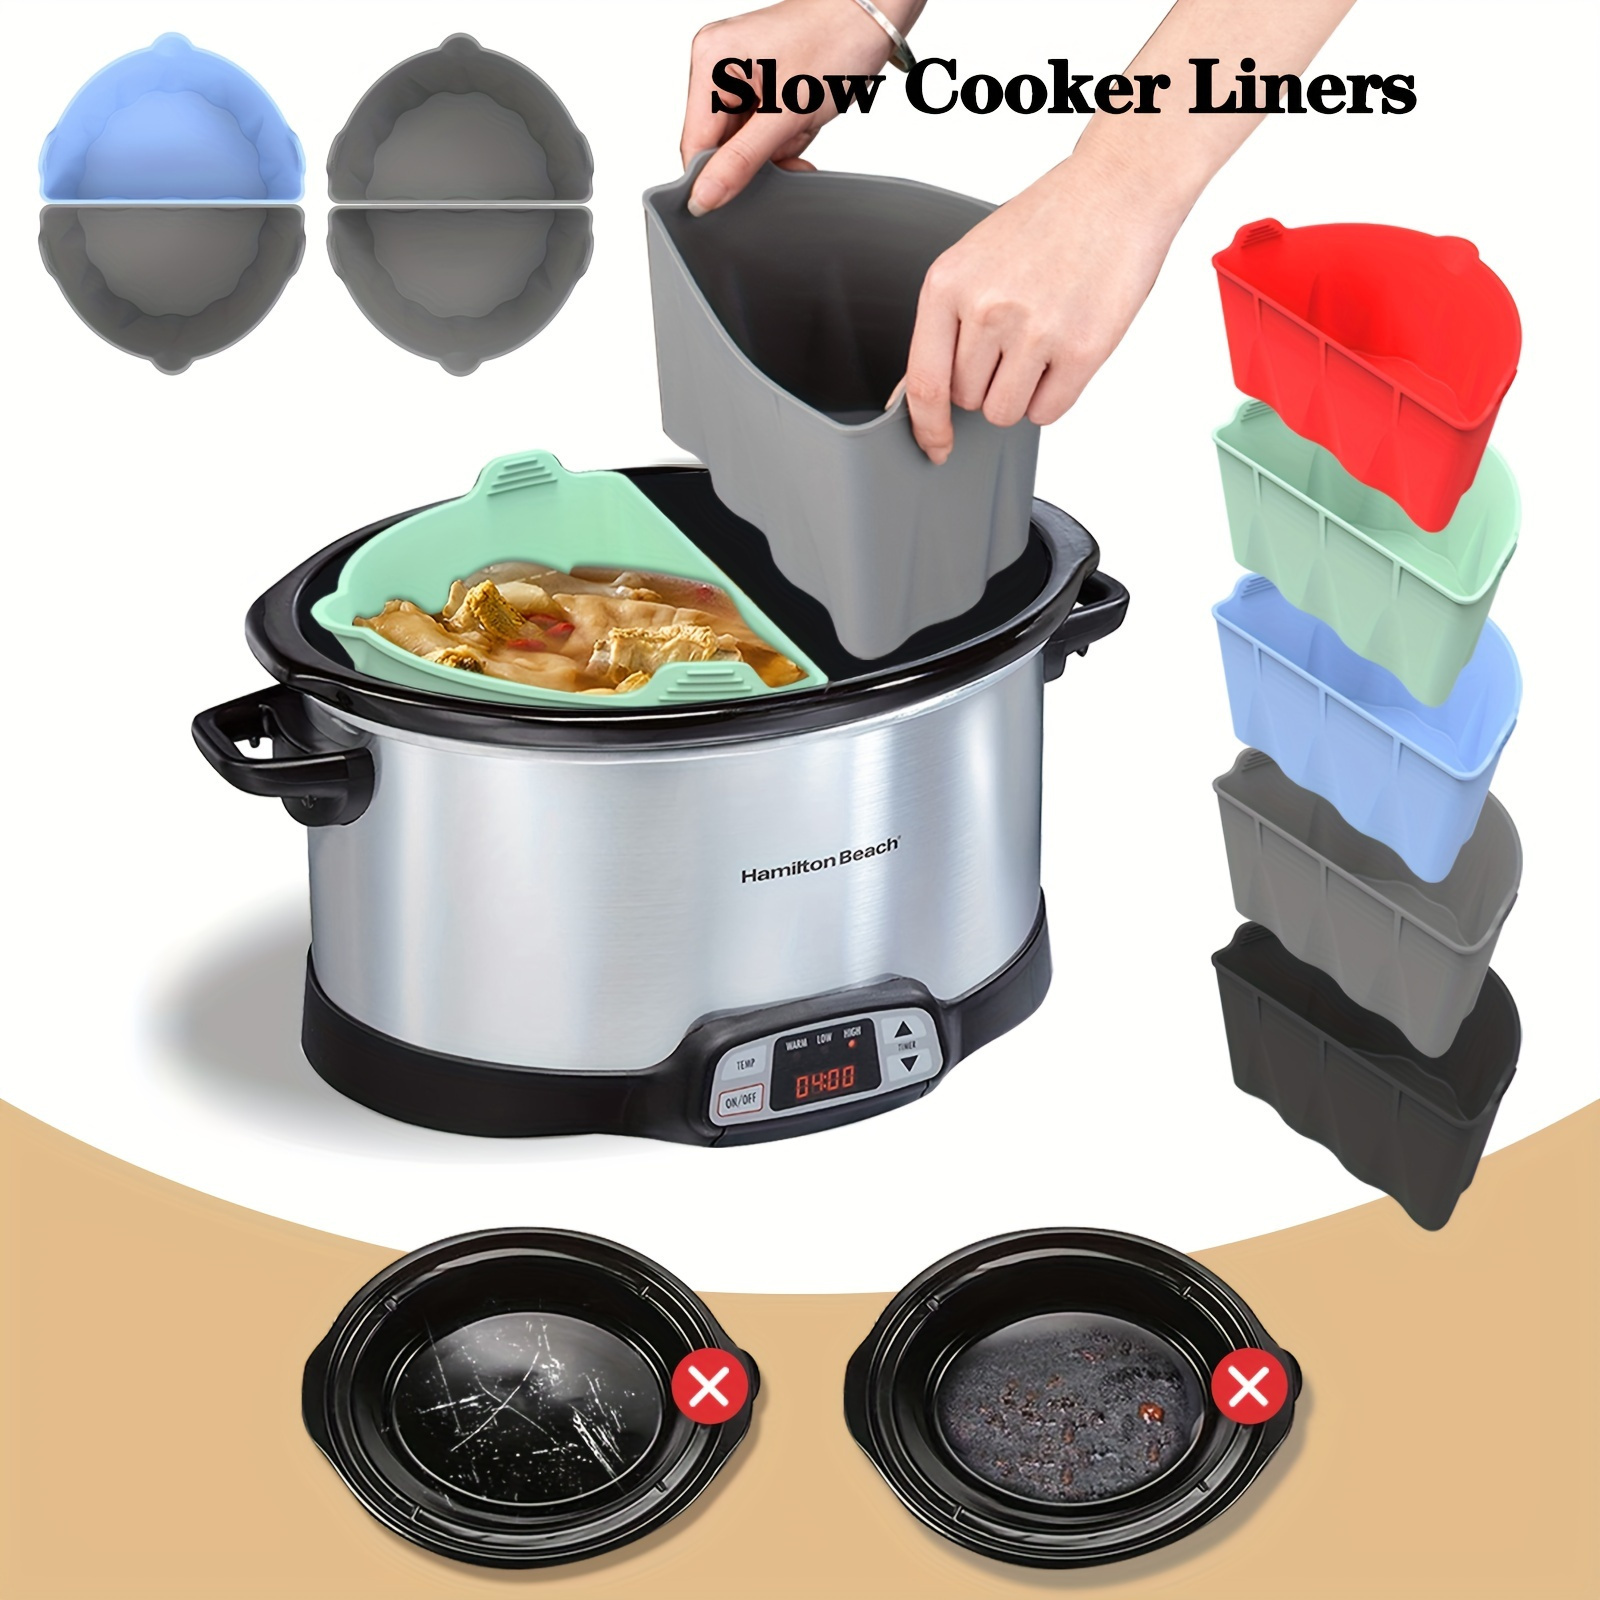  Silicone Crock Pot Liners, Slow Cooker Liner Fit Crock-Oot 7-8  Quart, Crock Pot Liner for Reusable, BPA Free, Easy Clean or Leakproof  Dishwasher Safe Cooking Liner (Black): Home & Kitchen